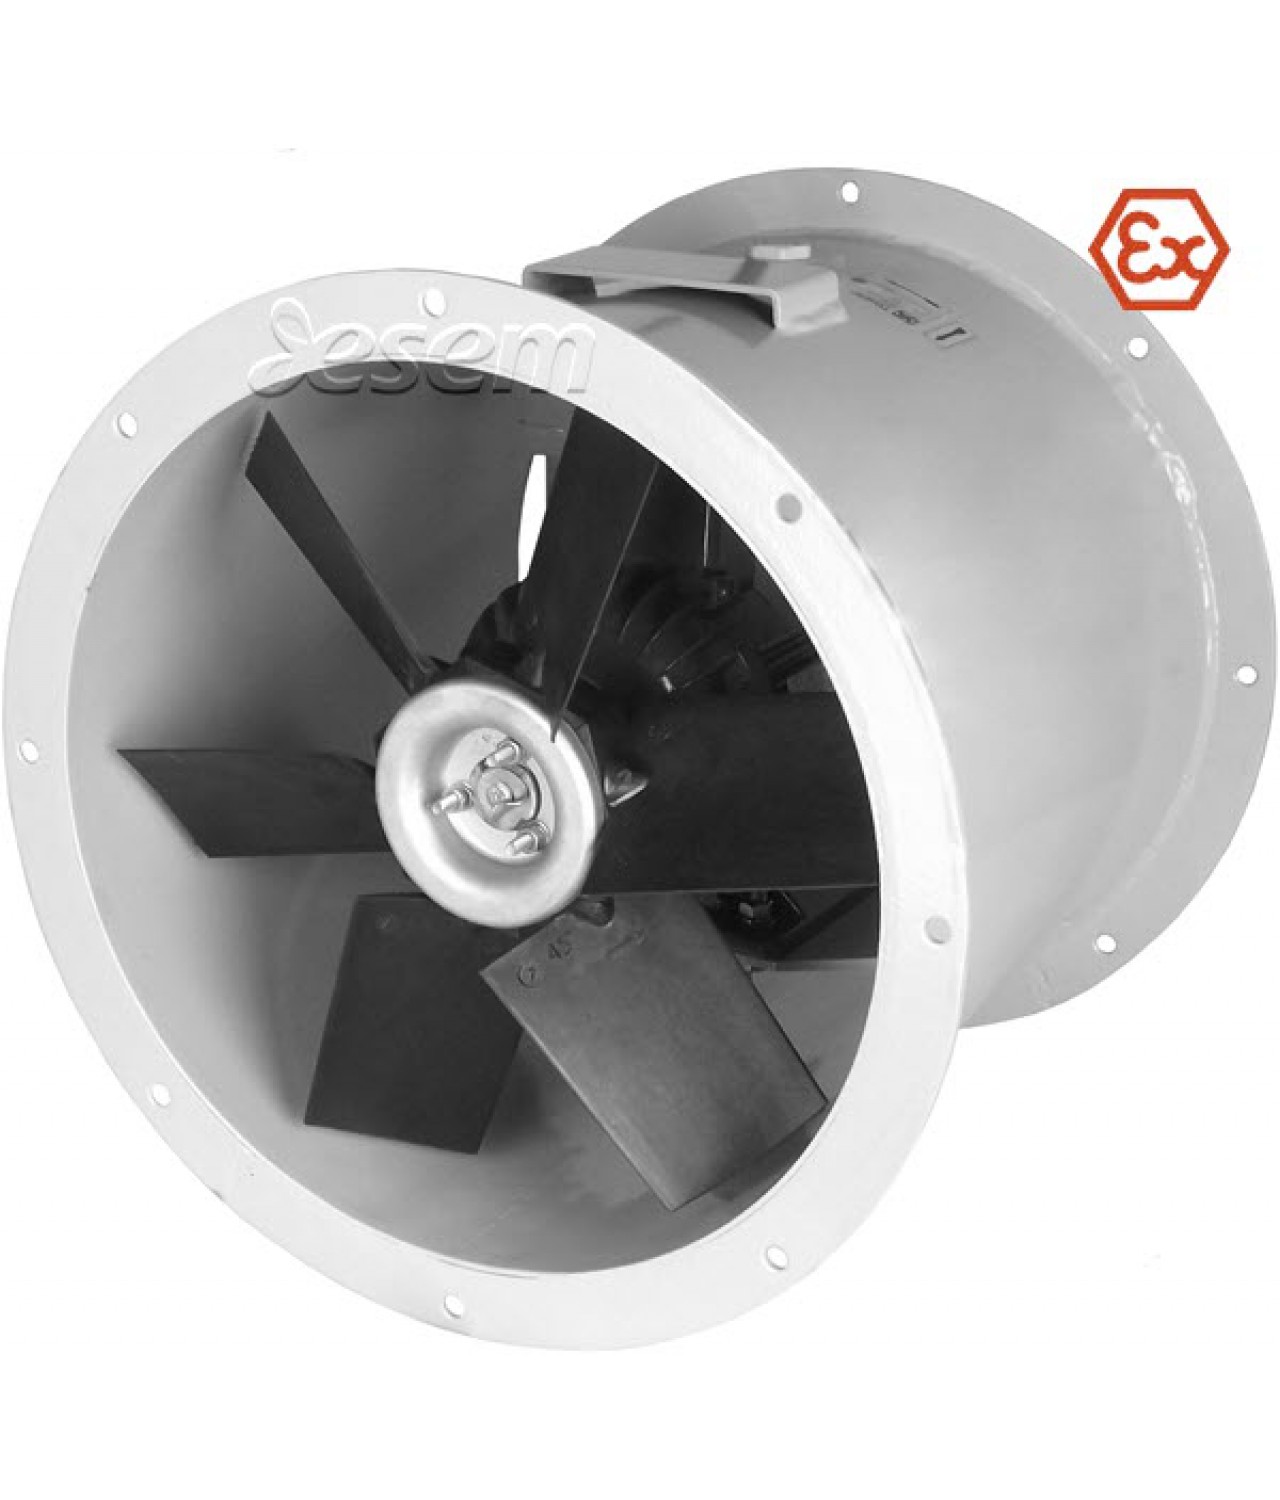 Sprogimui saugūs ašiniai kanaliniai ventiliatoriai AVOFK EX ≤20500 m³/h